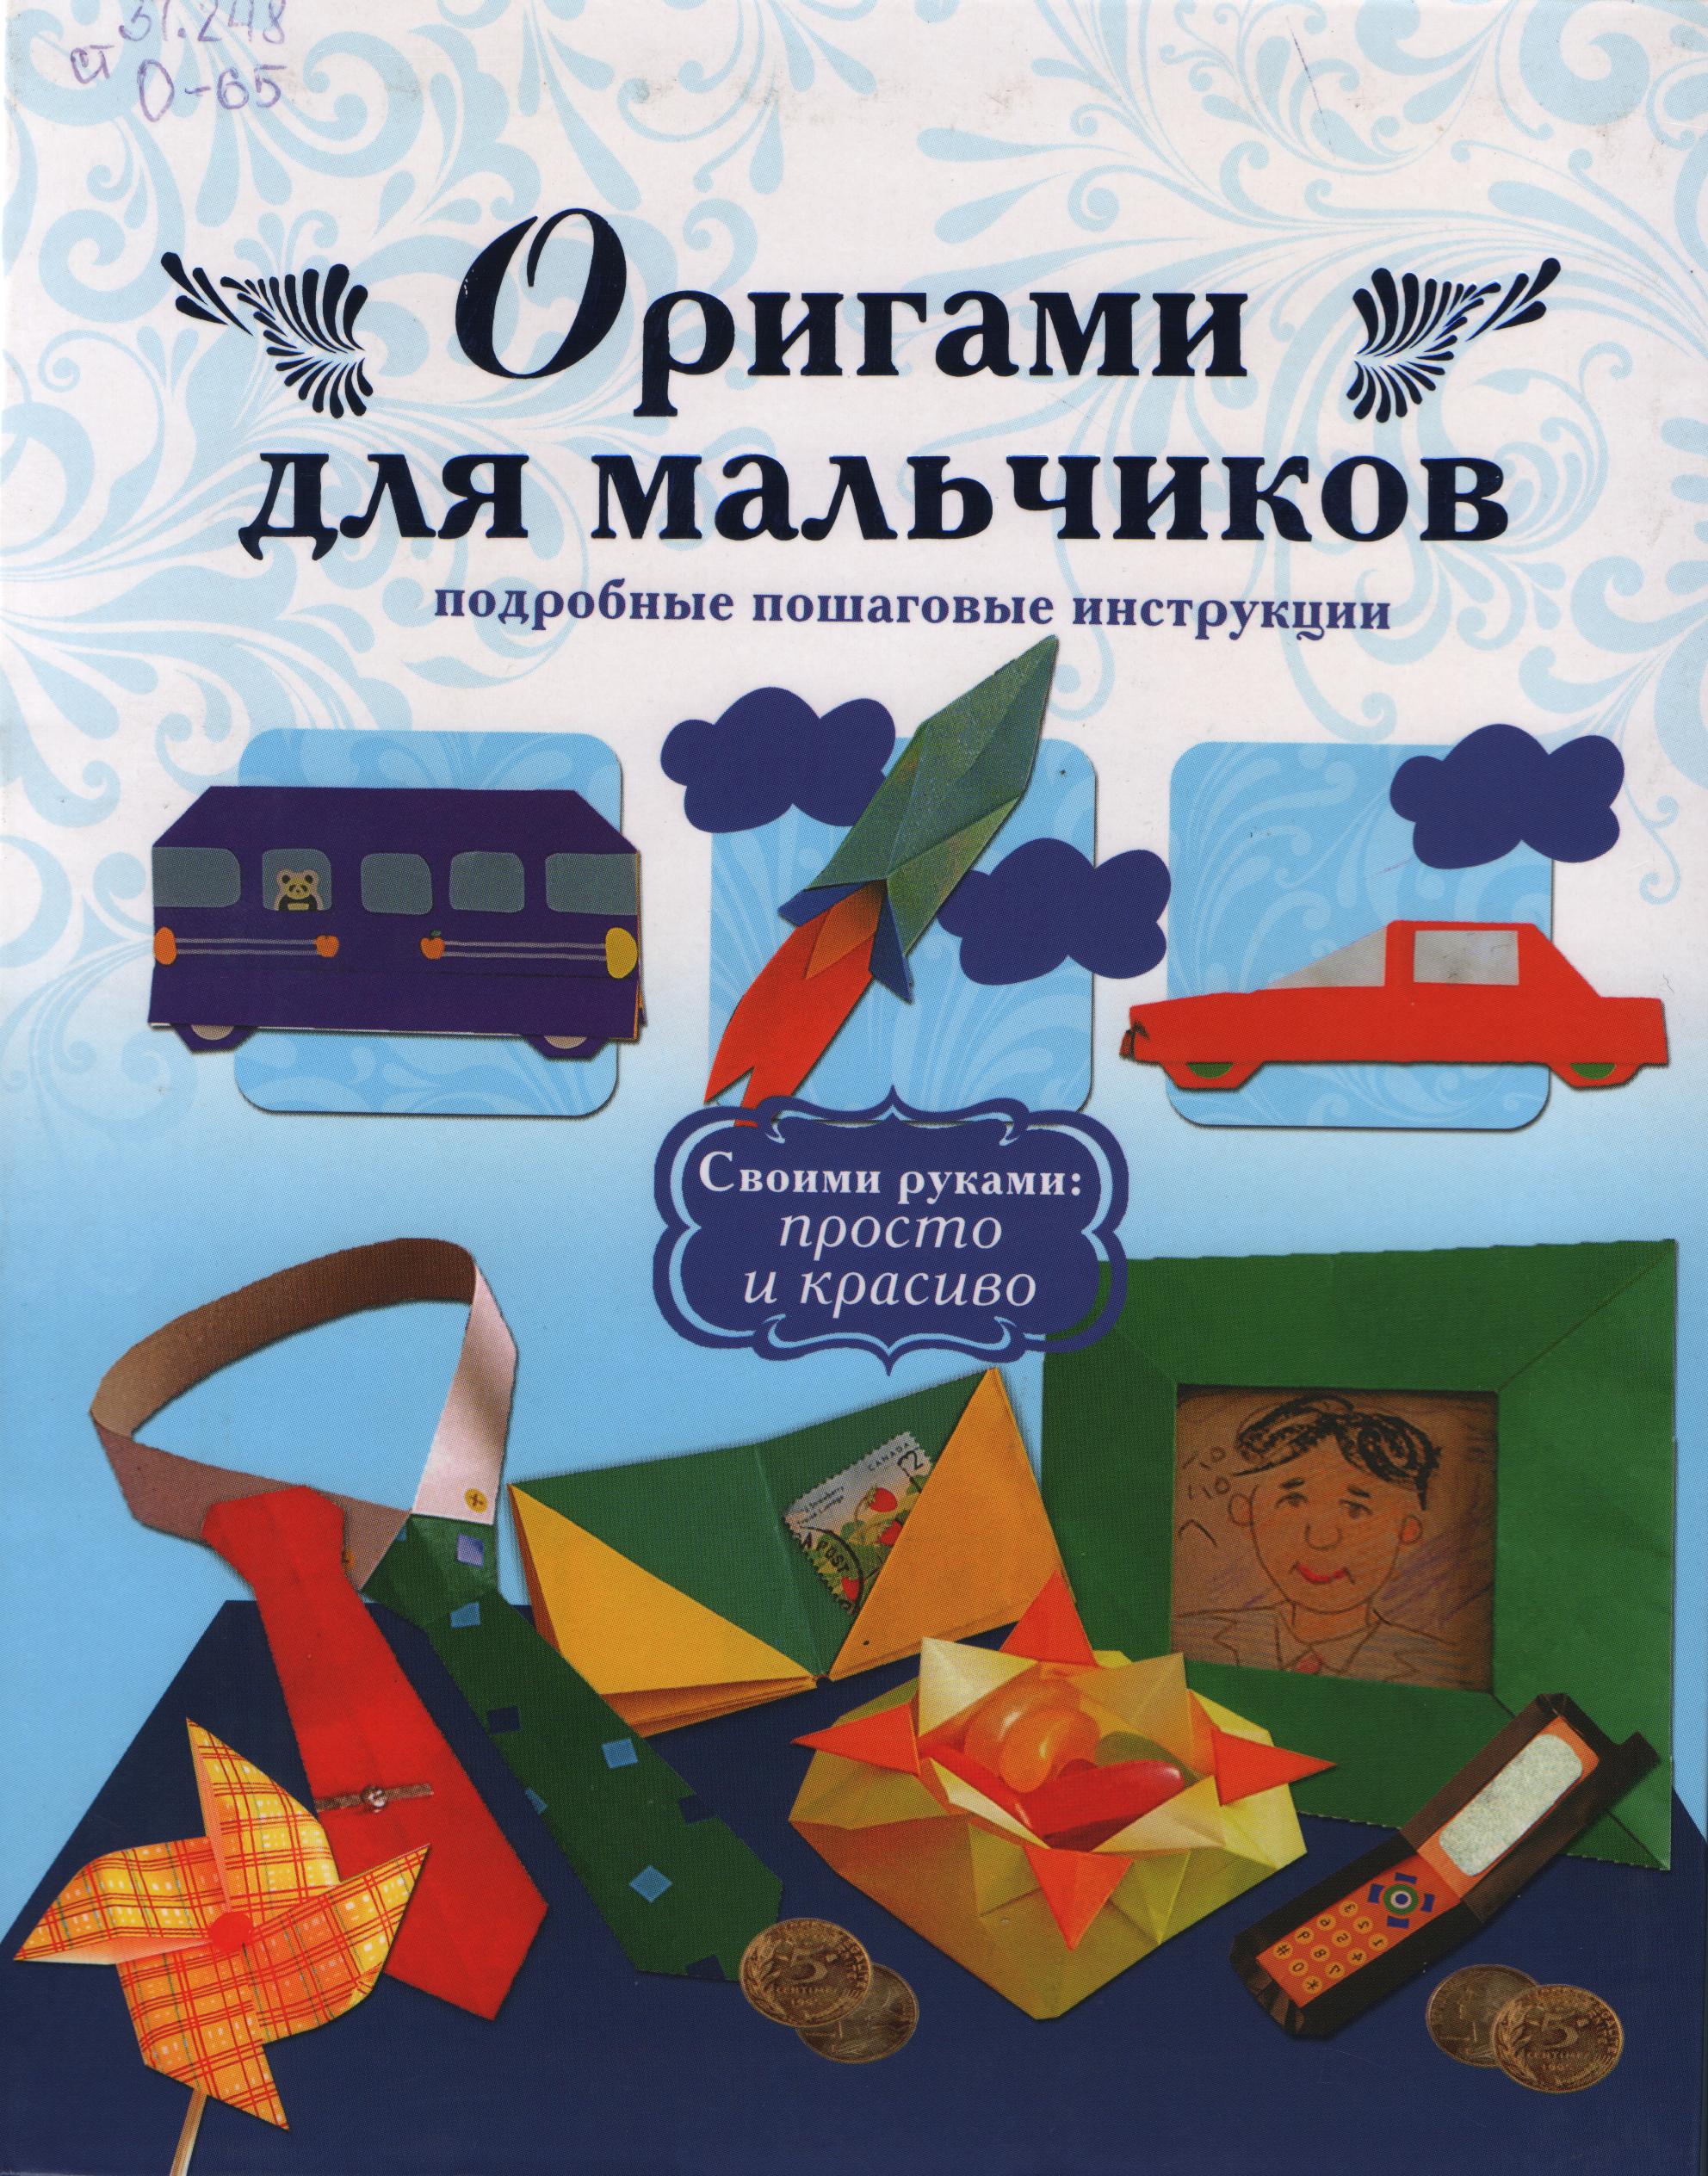 Origami dlya malchikov